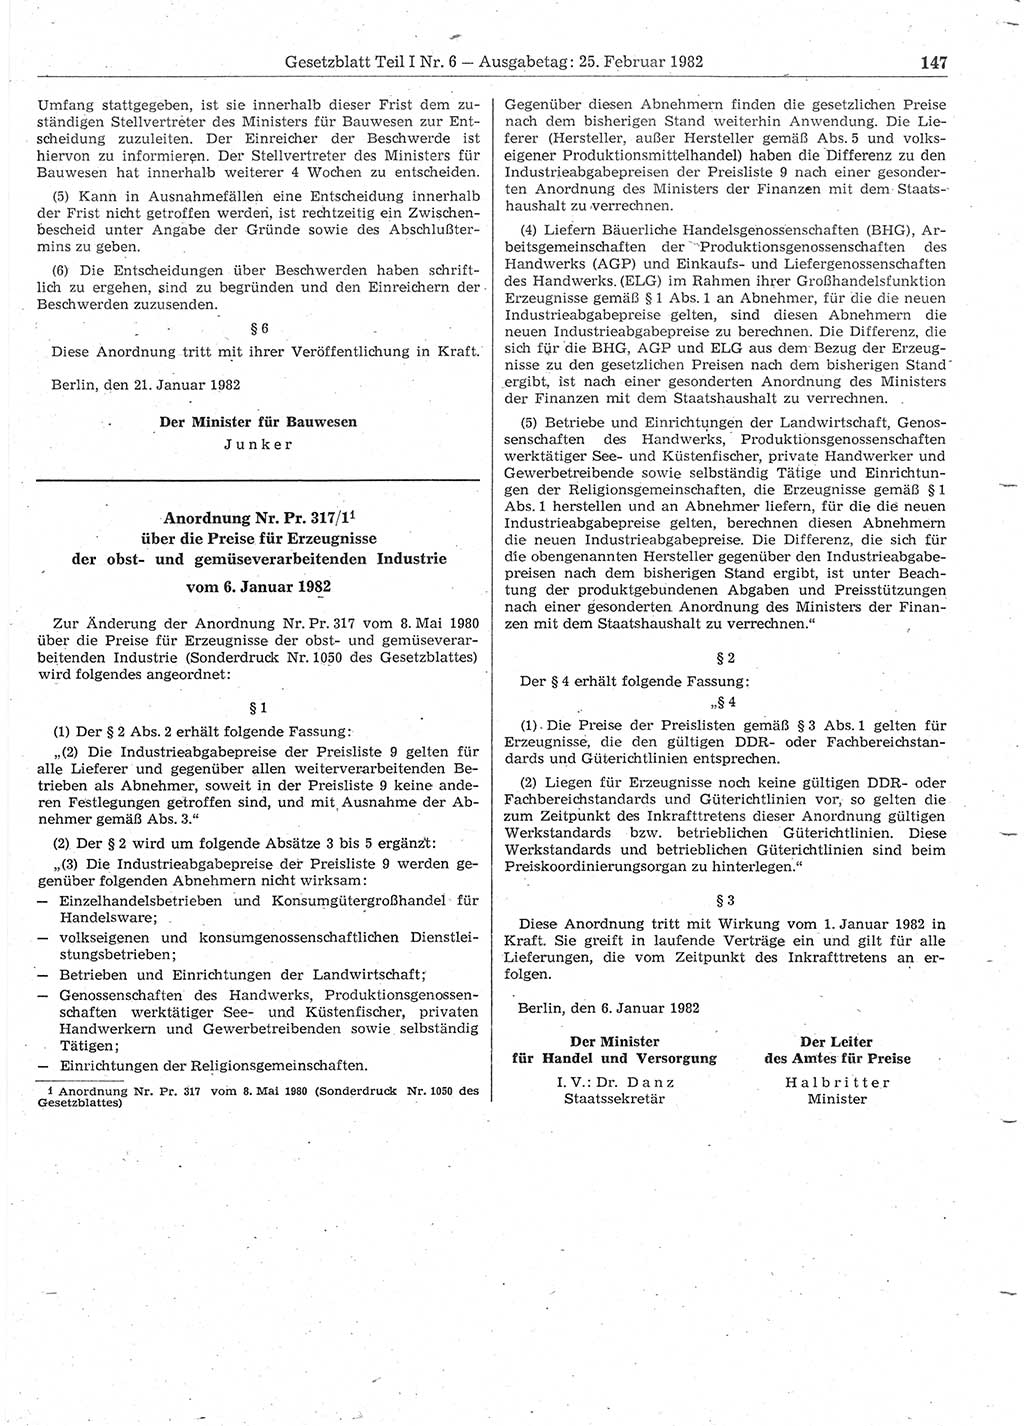 Gesetzblatt (GBl.) der Deutschen Demokratischen Republik (DDR) Teil Ⅰ 1982, Seite 147 (GBl. DDR Ⅰ 1982, S. 147)